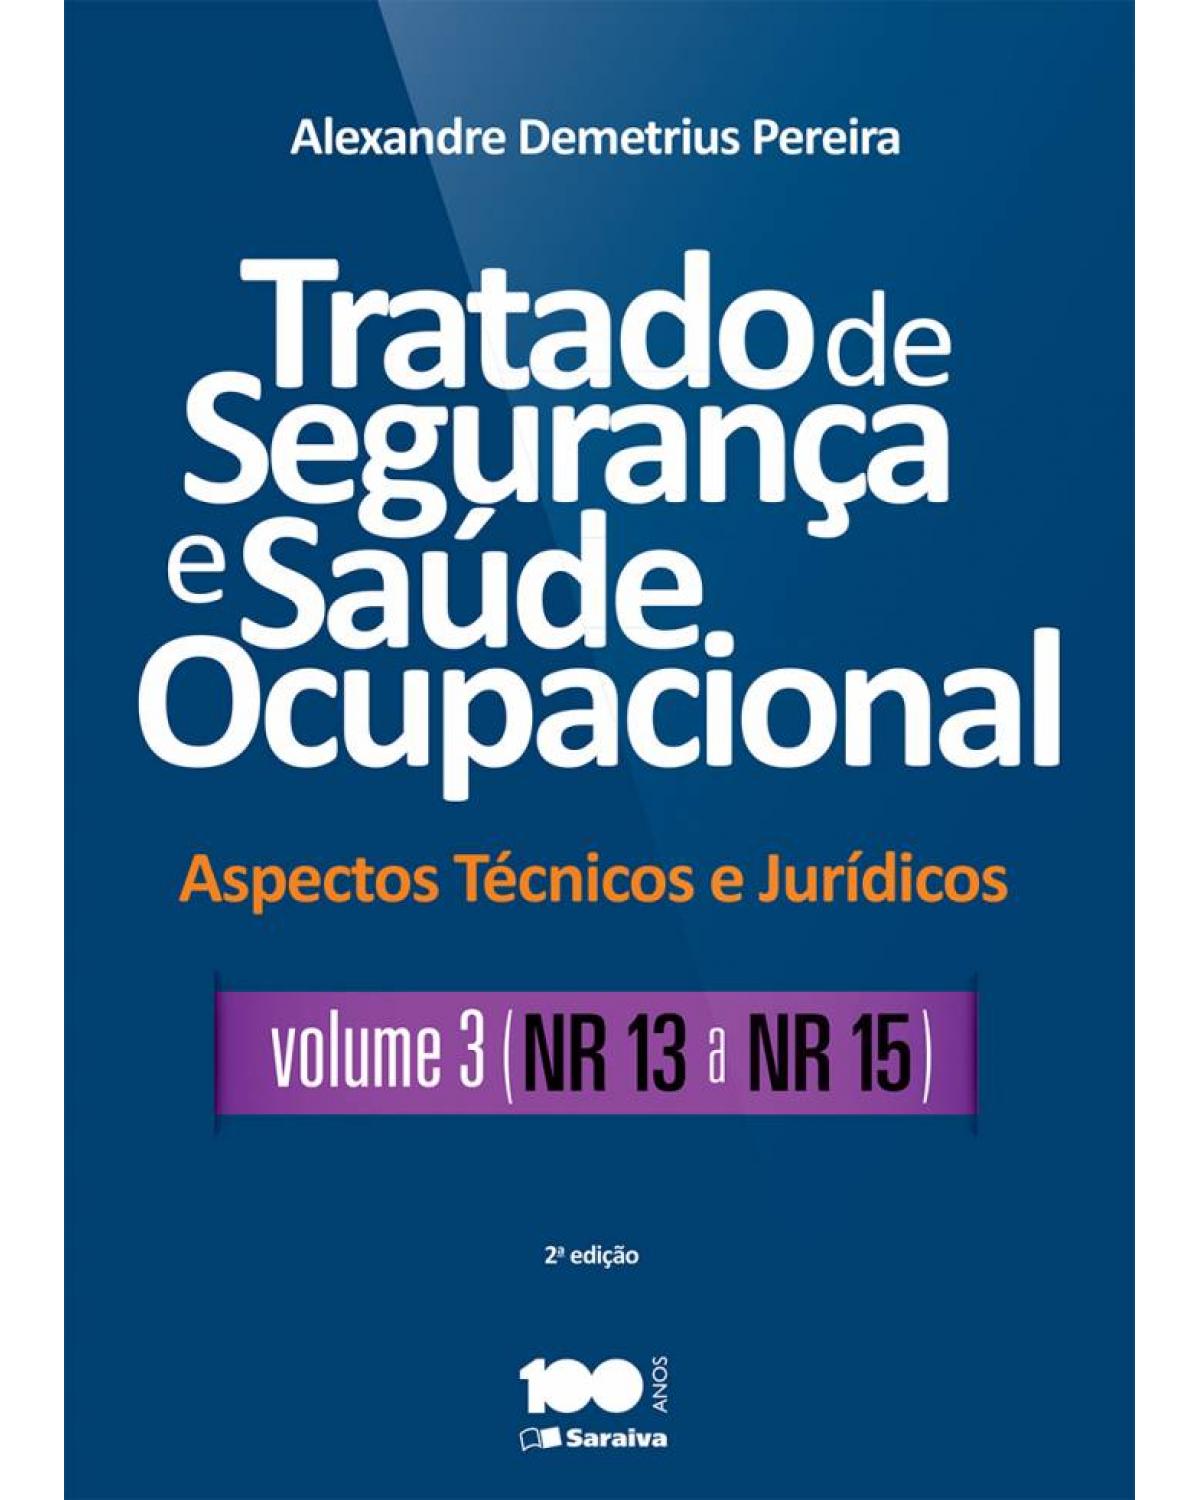 Tratado de segurança e saúde ocupacional - Volume 3: aspectos técnicos e jurídicos - NR 13 a NR 15 - 2ª Edição | 2015